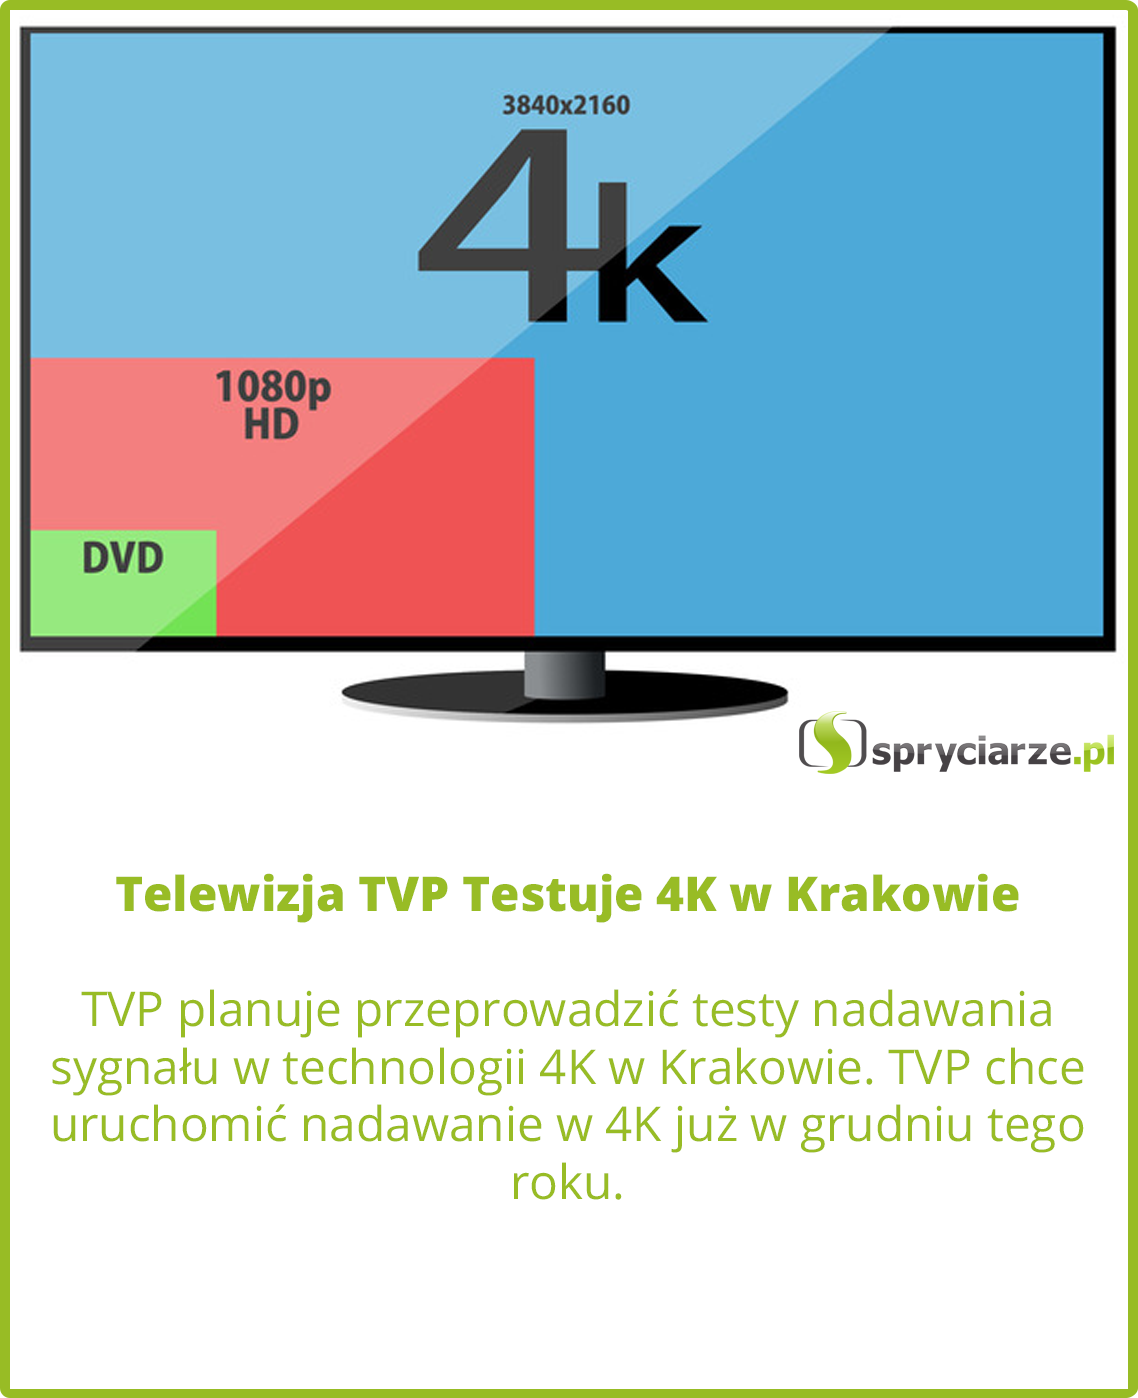 Telewizja TVP Testuje 4K w Krakowie